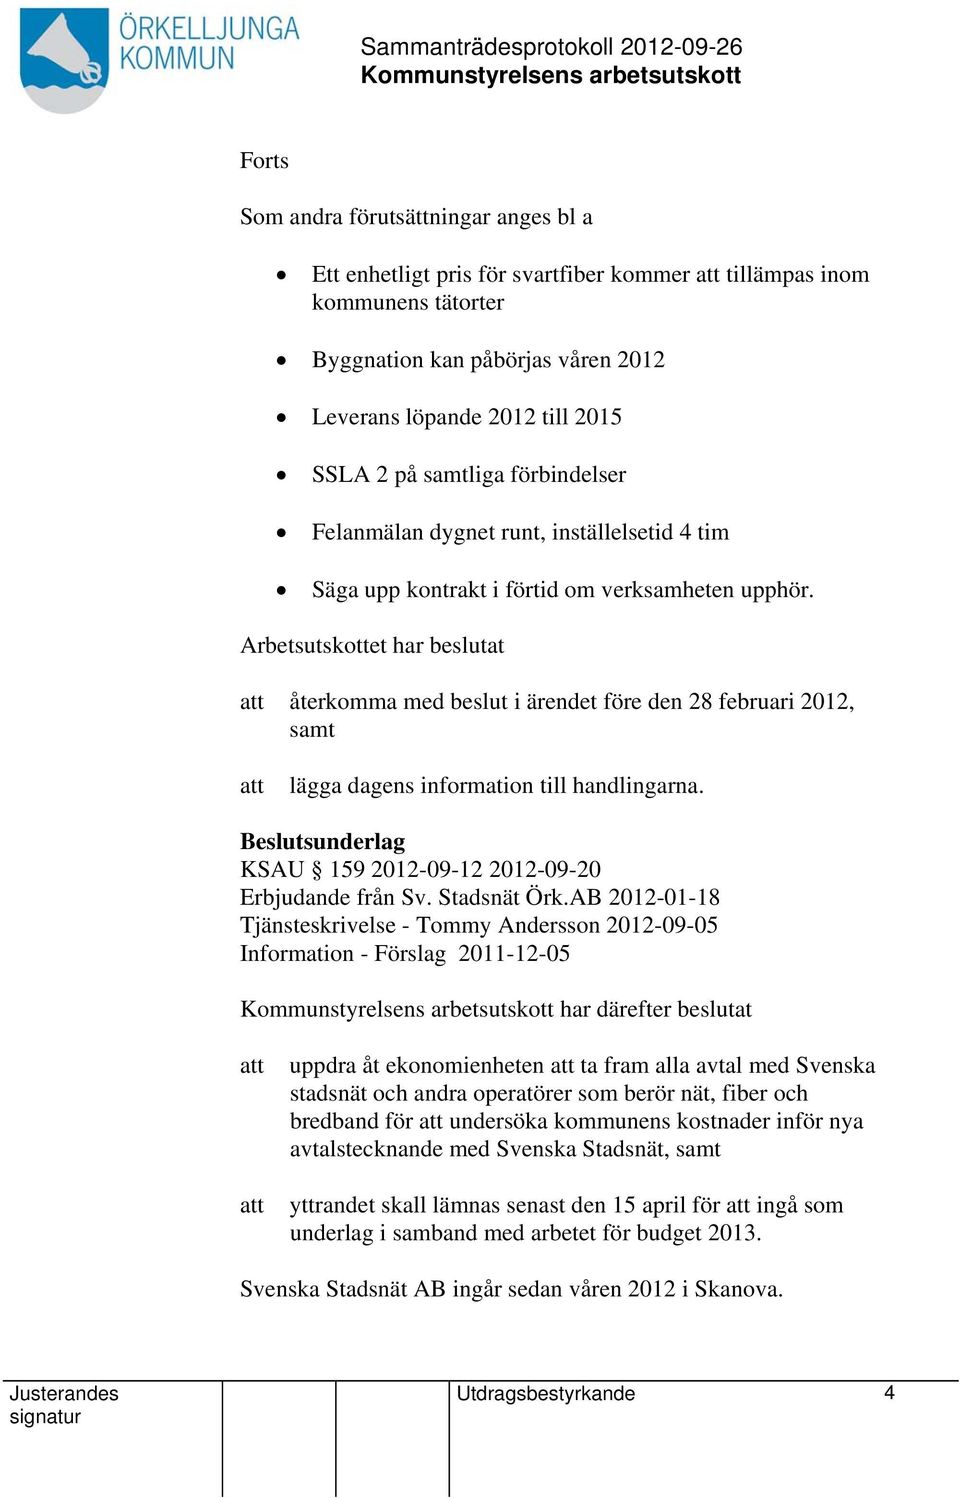 Arbetsutskottet har beslutat återkomma med beslut i ärendet före den 28 februari 2012, samt lägga dagens information till handlingarna. KSAU 159 2012-09-12 2012-09-20 Erbjudande från Sv. Stadsnät Örk.